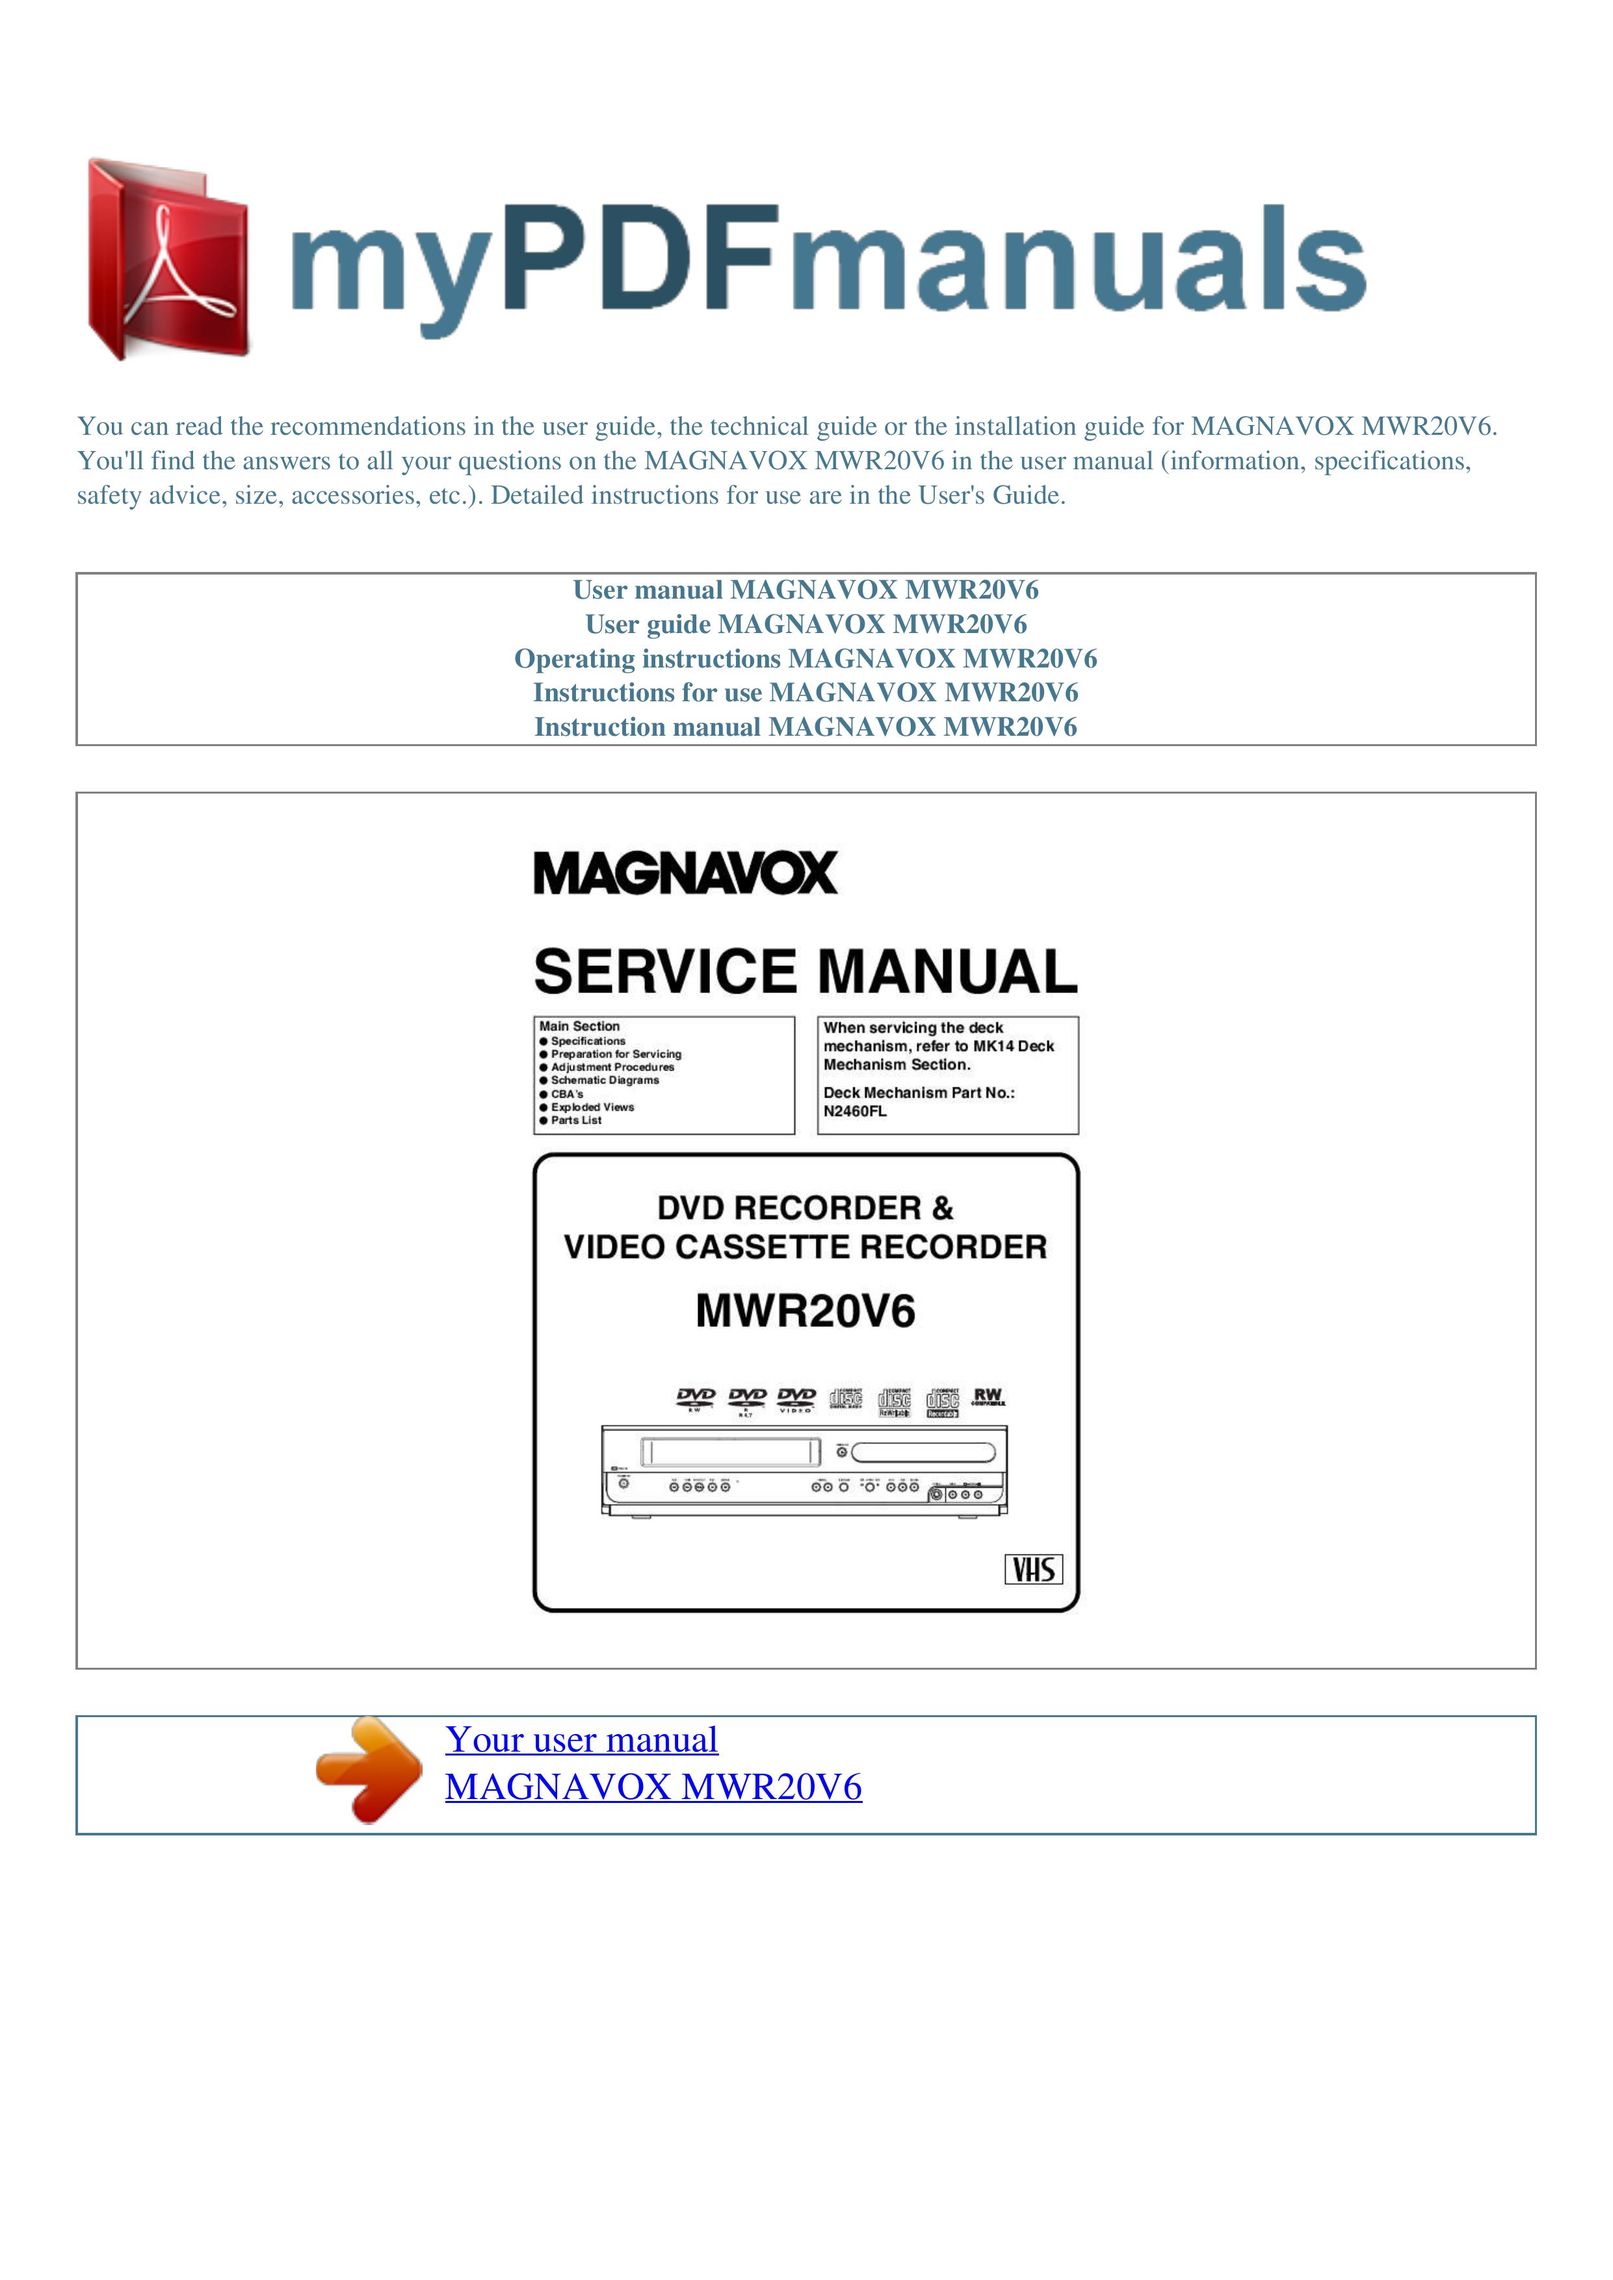 Magnavox MWR20V6 DVD Recorder User Manual